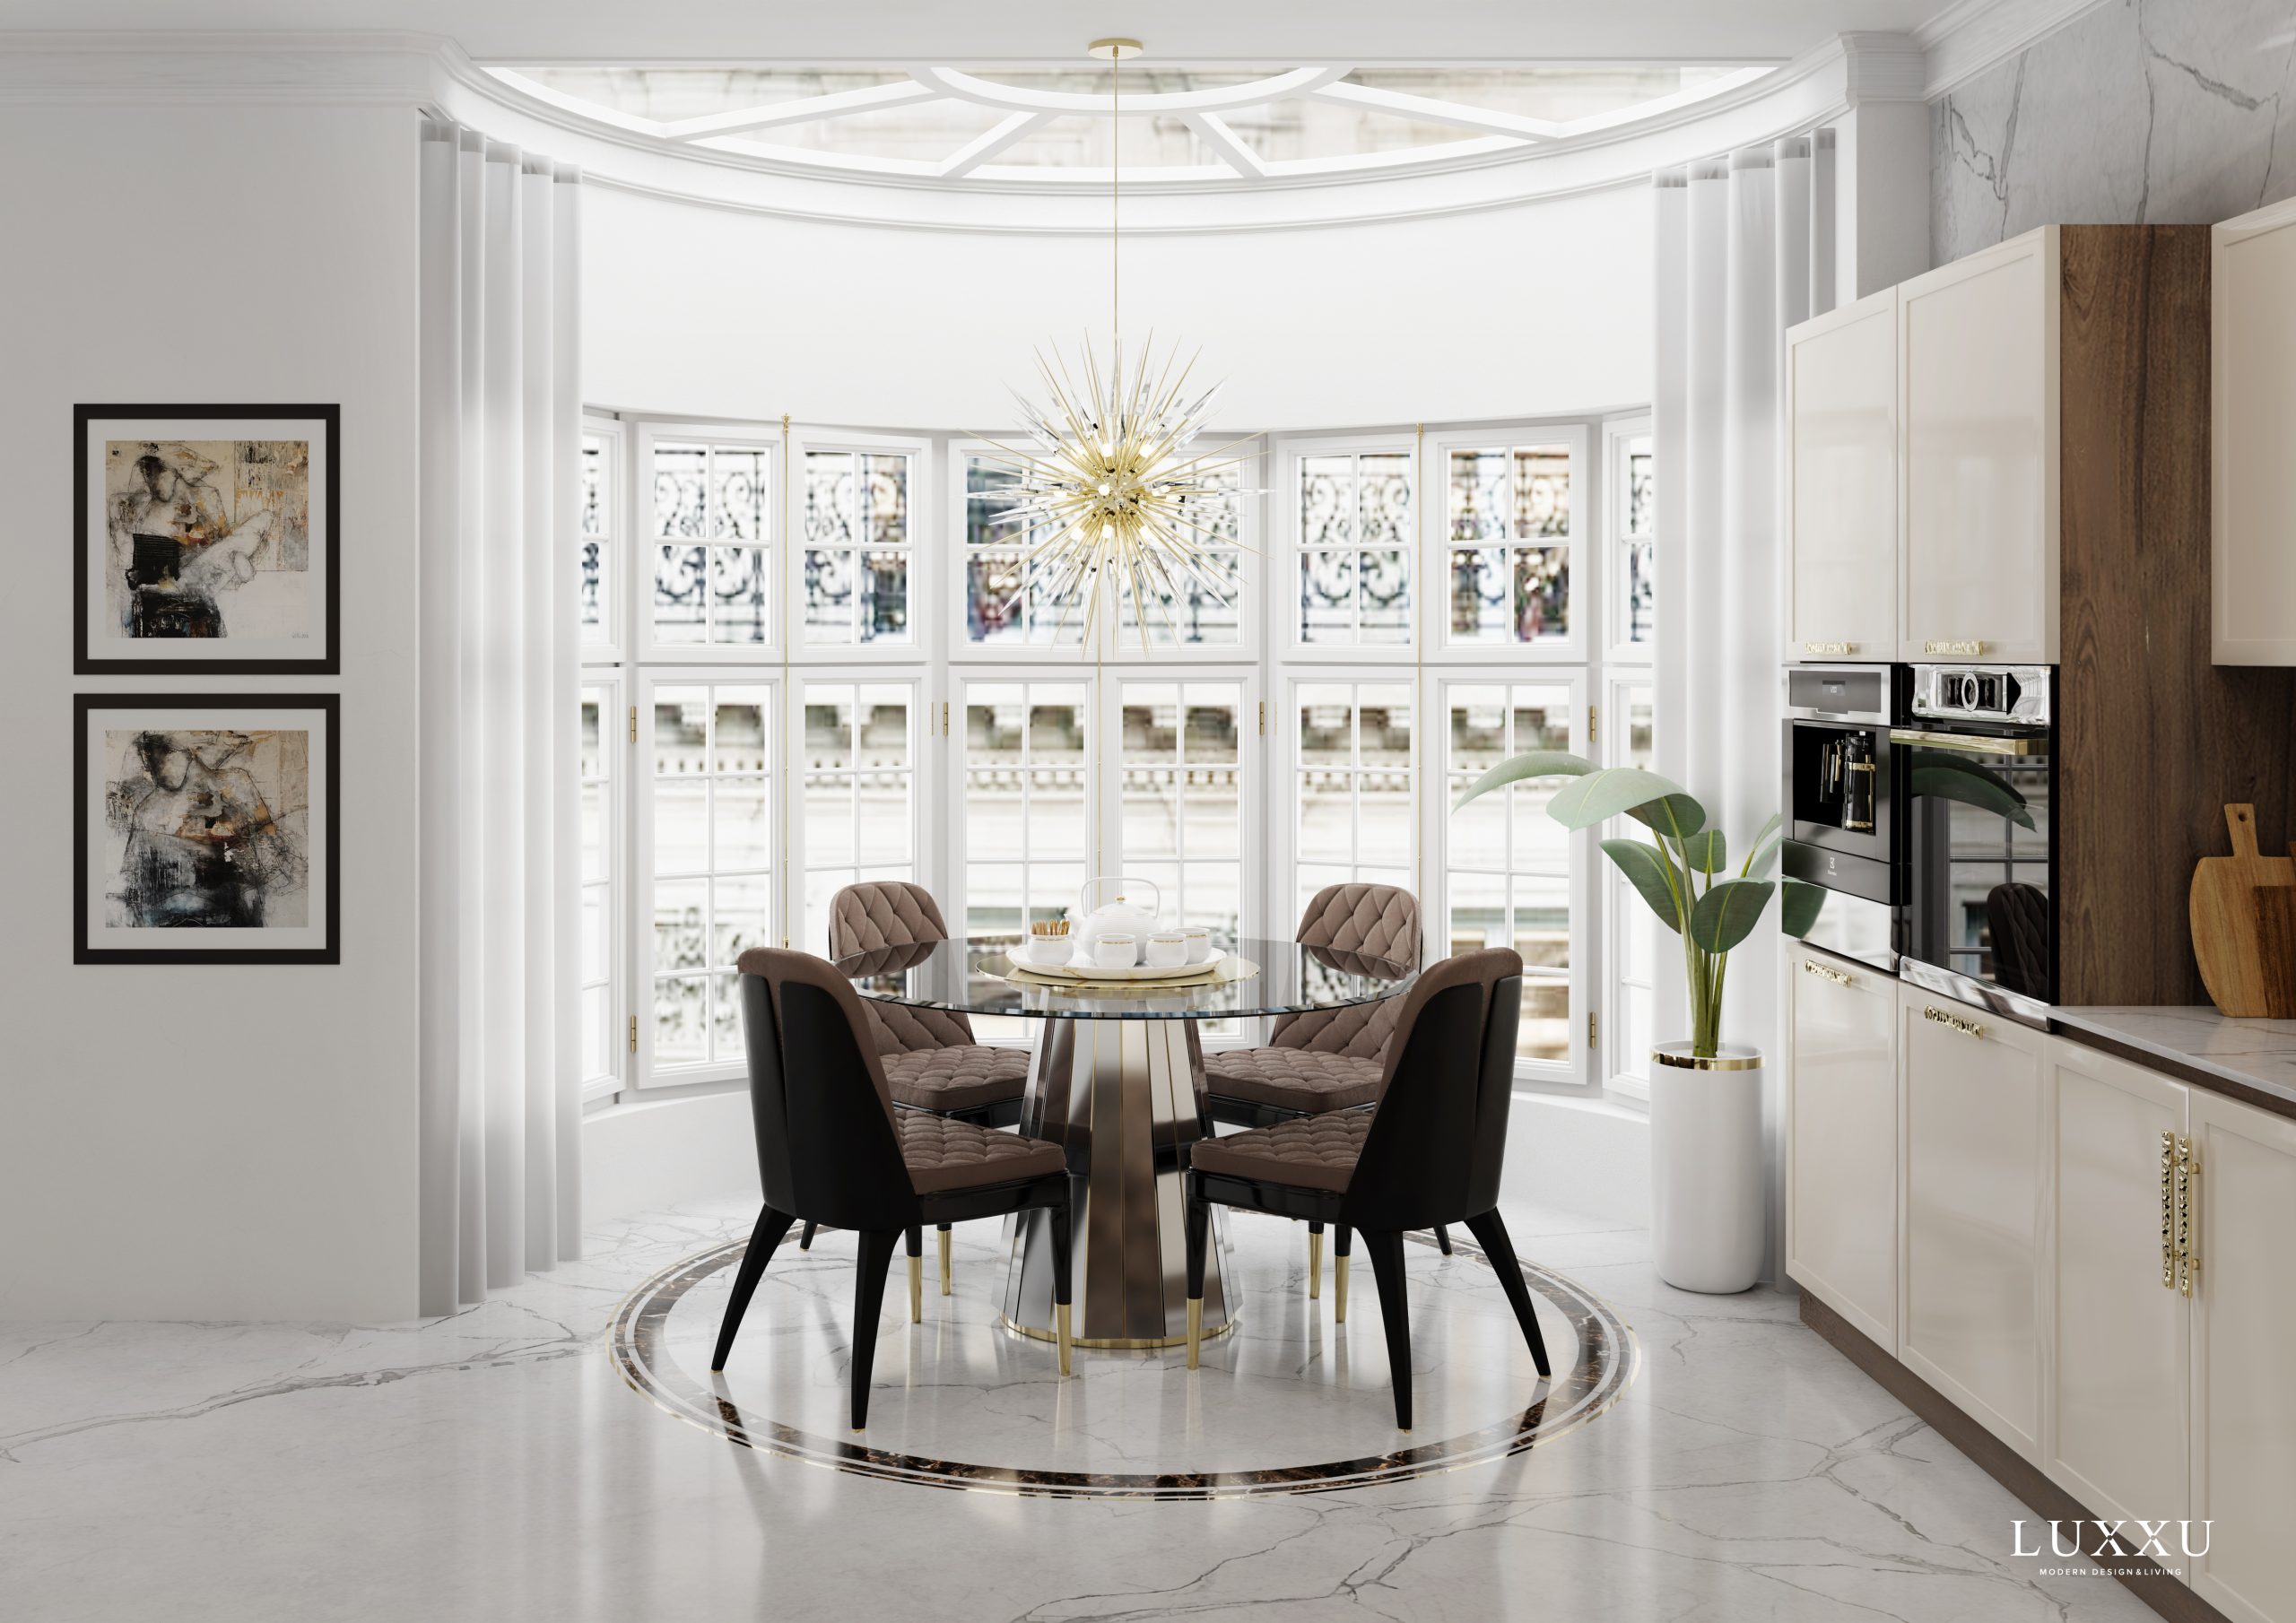 Vivant Parisian Apartment - The Full Charm Of Paris In This Luxxu Design